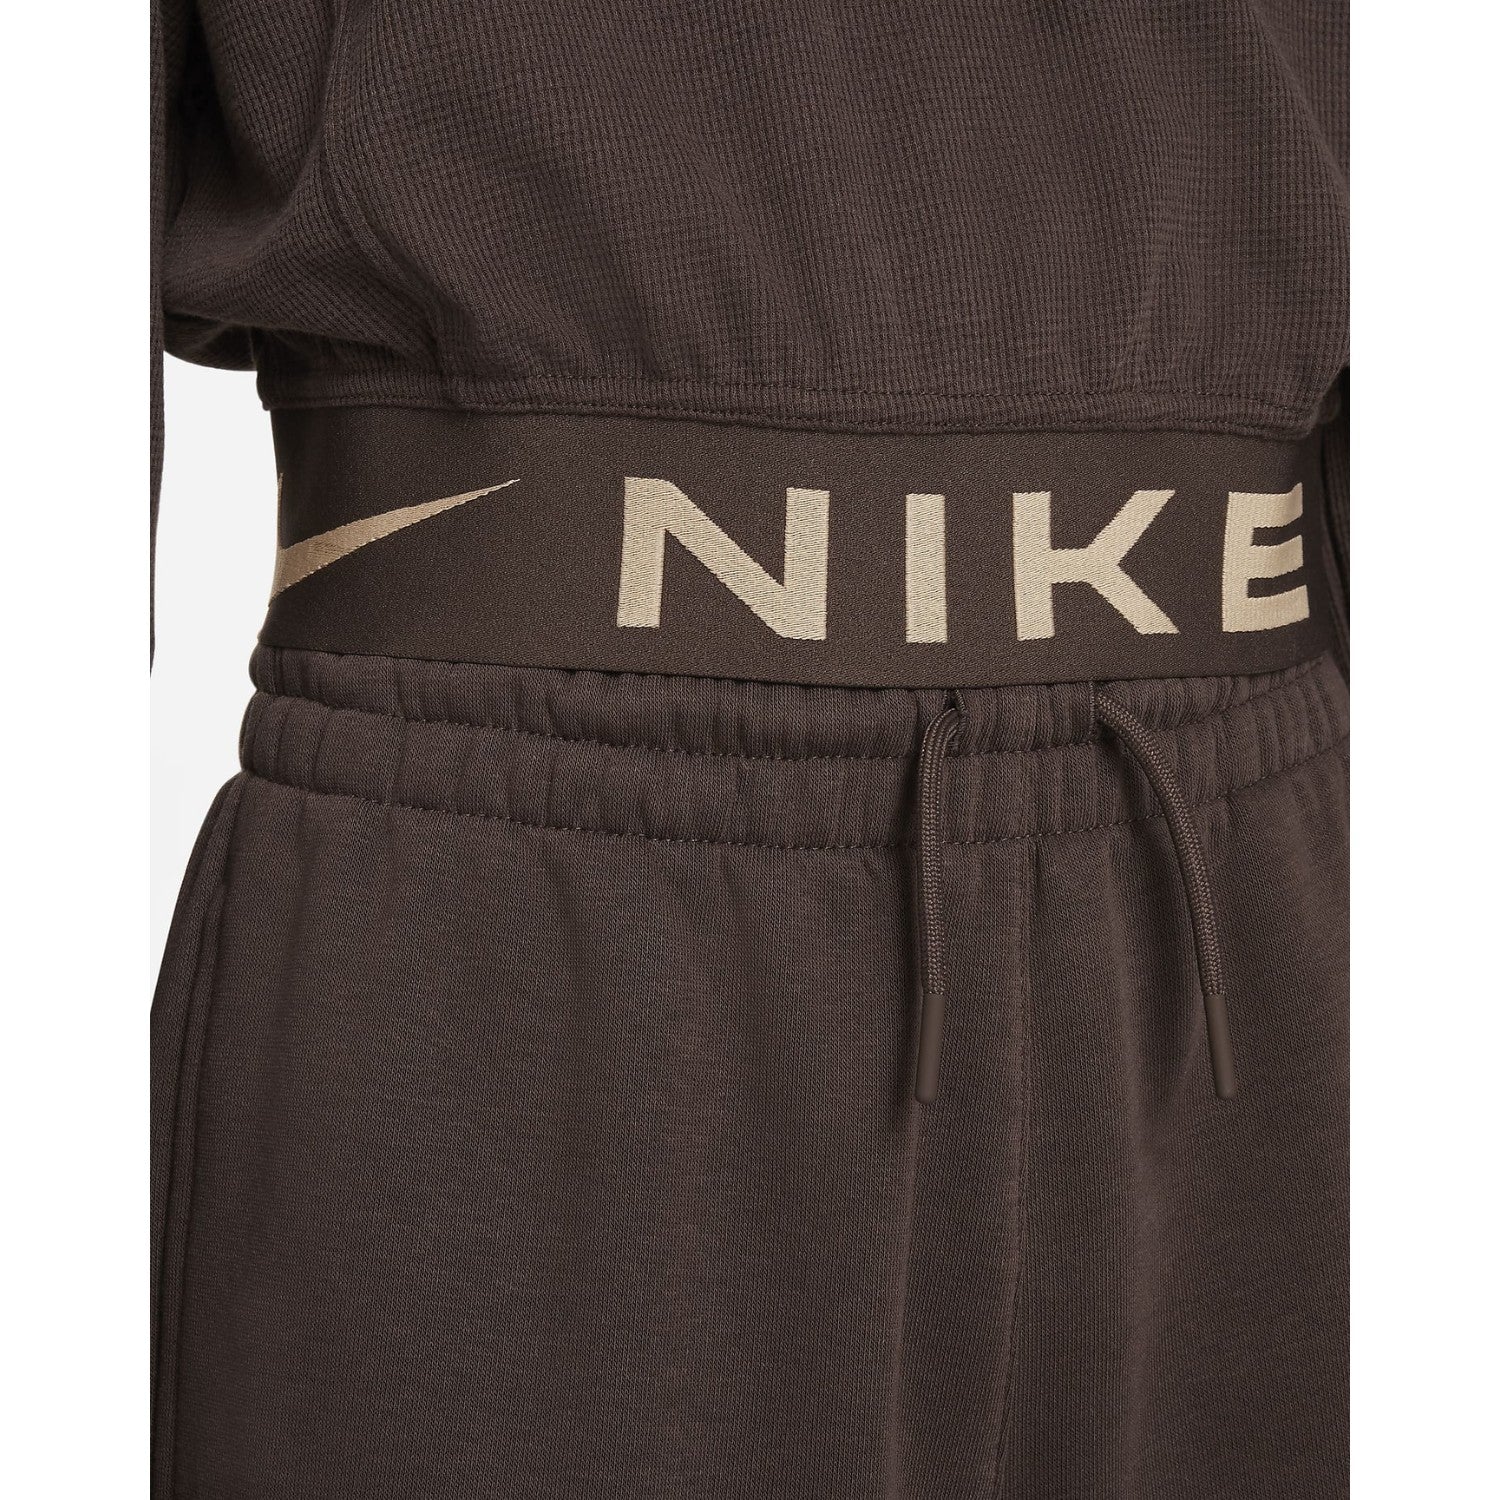 Nike Air Older Kids' (Girls') Long-sleeve Top Big Kids Style : Fd2966